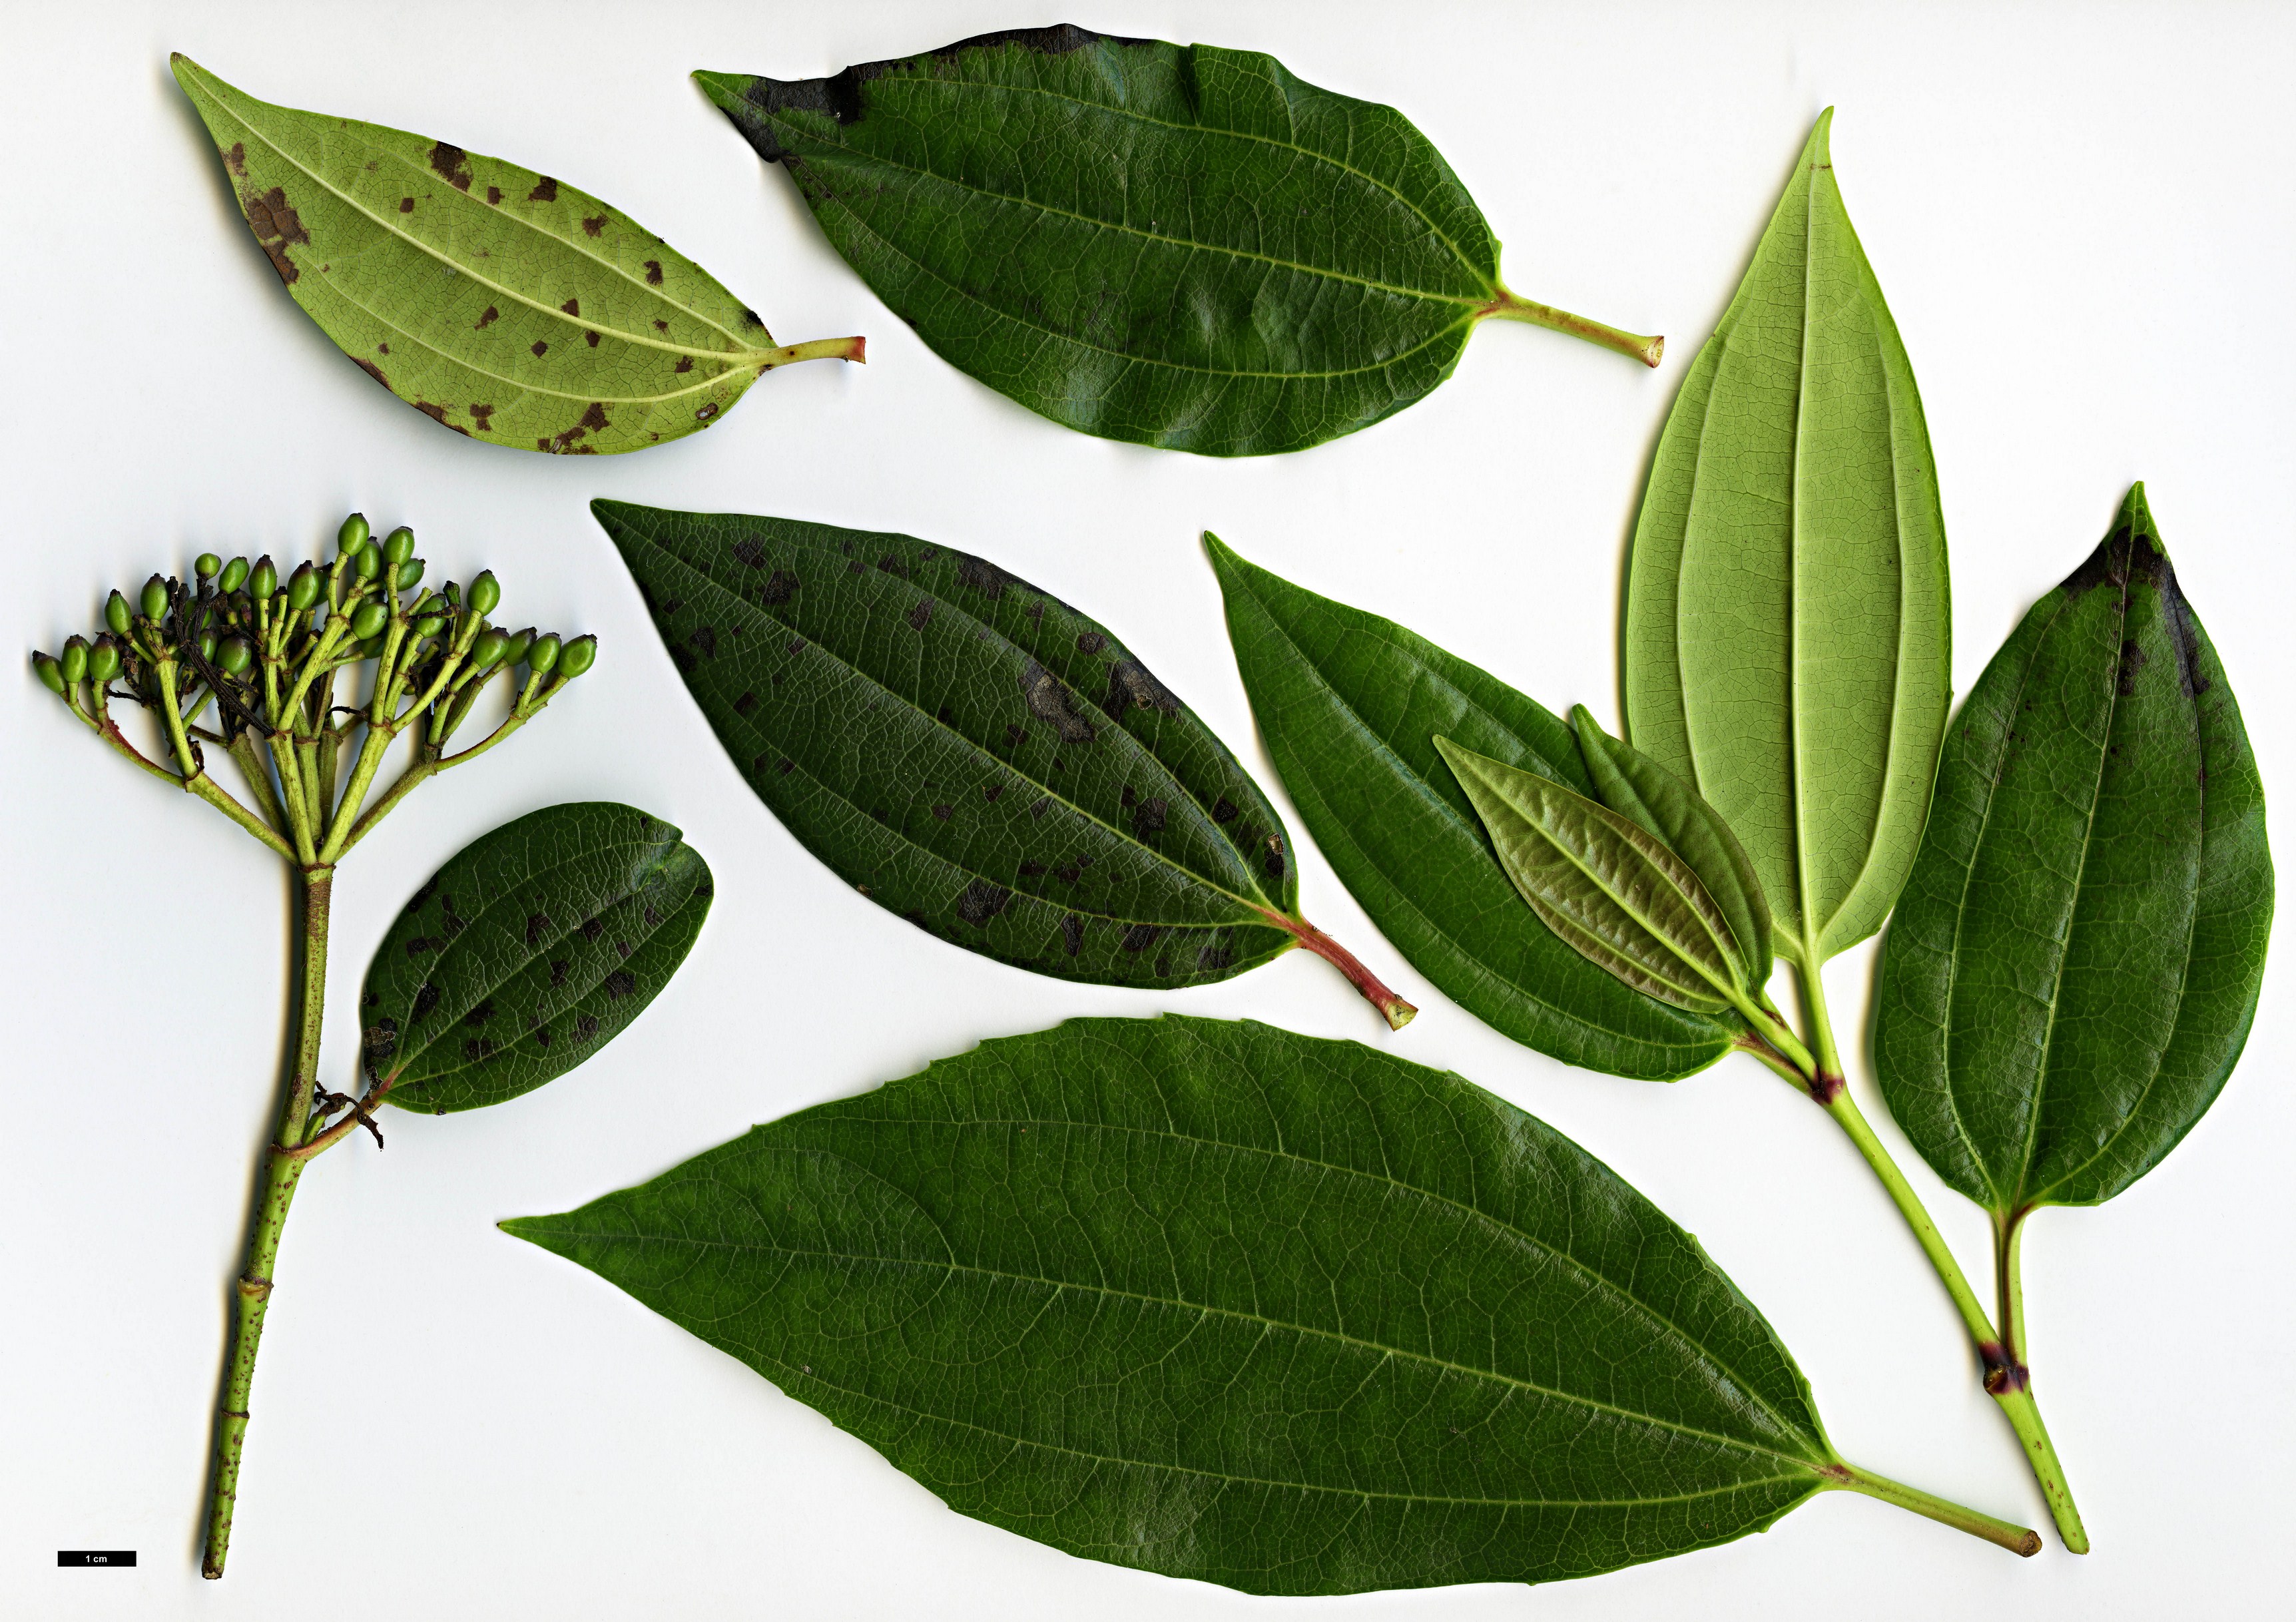 High resolution image: Family: Adoxaceae - Genus: Viburnum - Taxon: cinnamomifolium